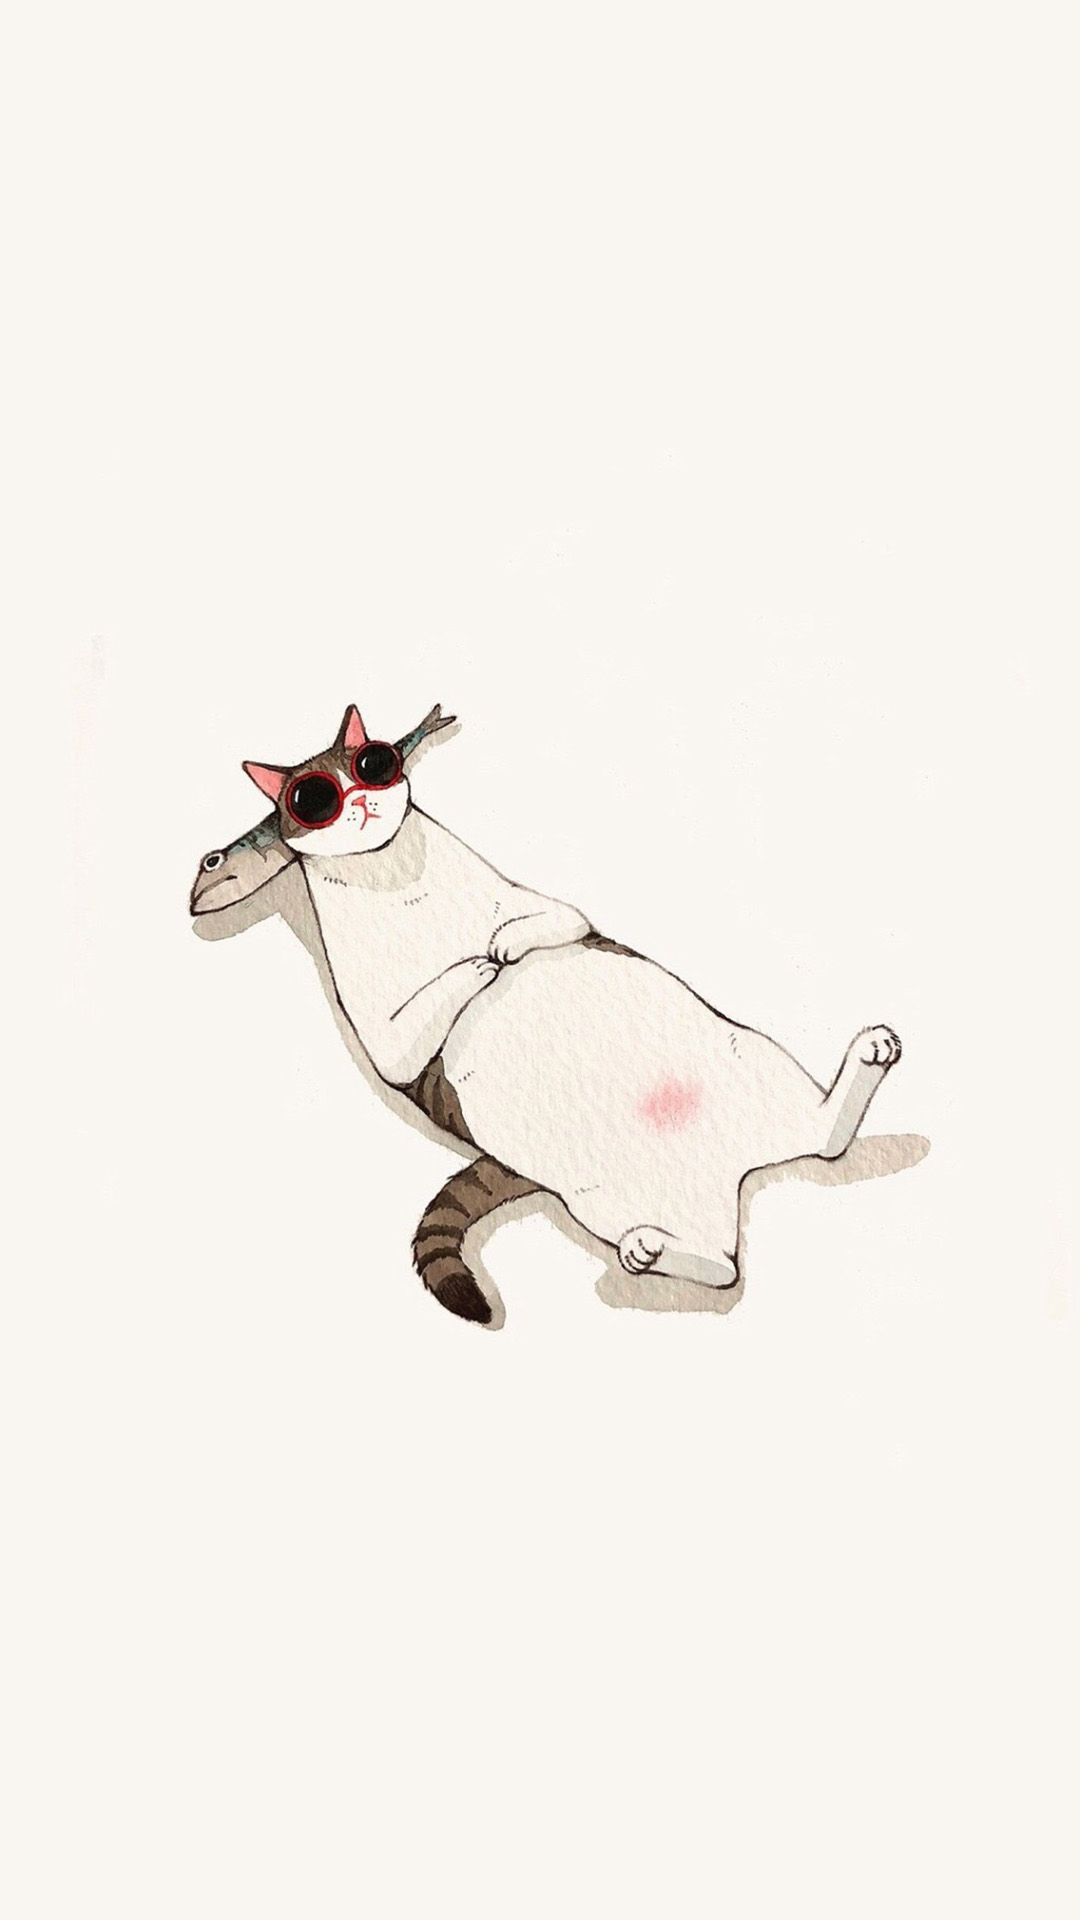 萌趣猫咪卡通插画手机壁纸